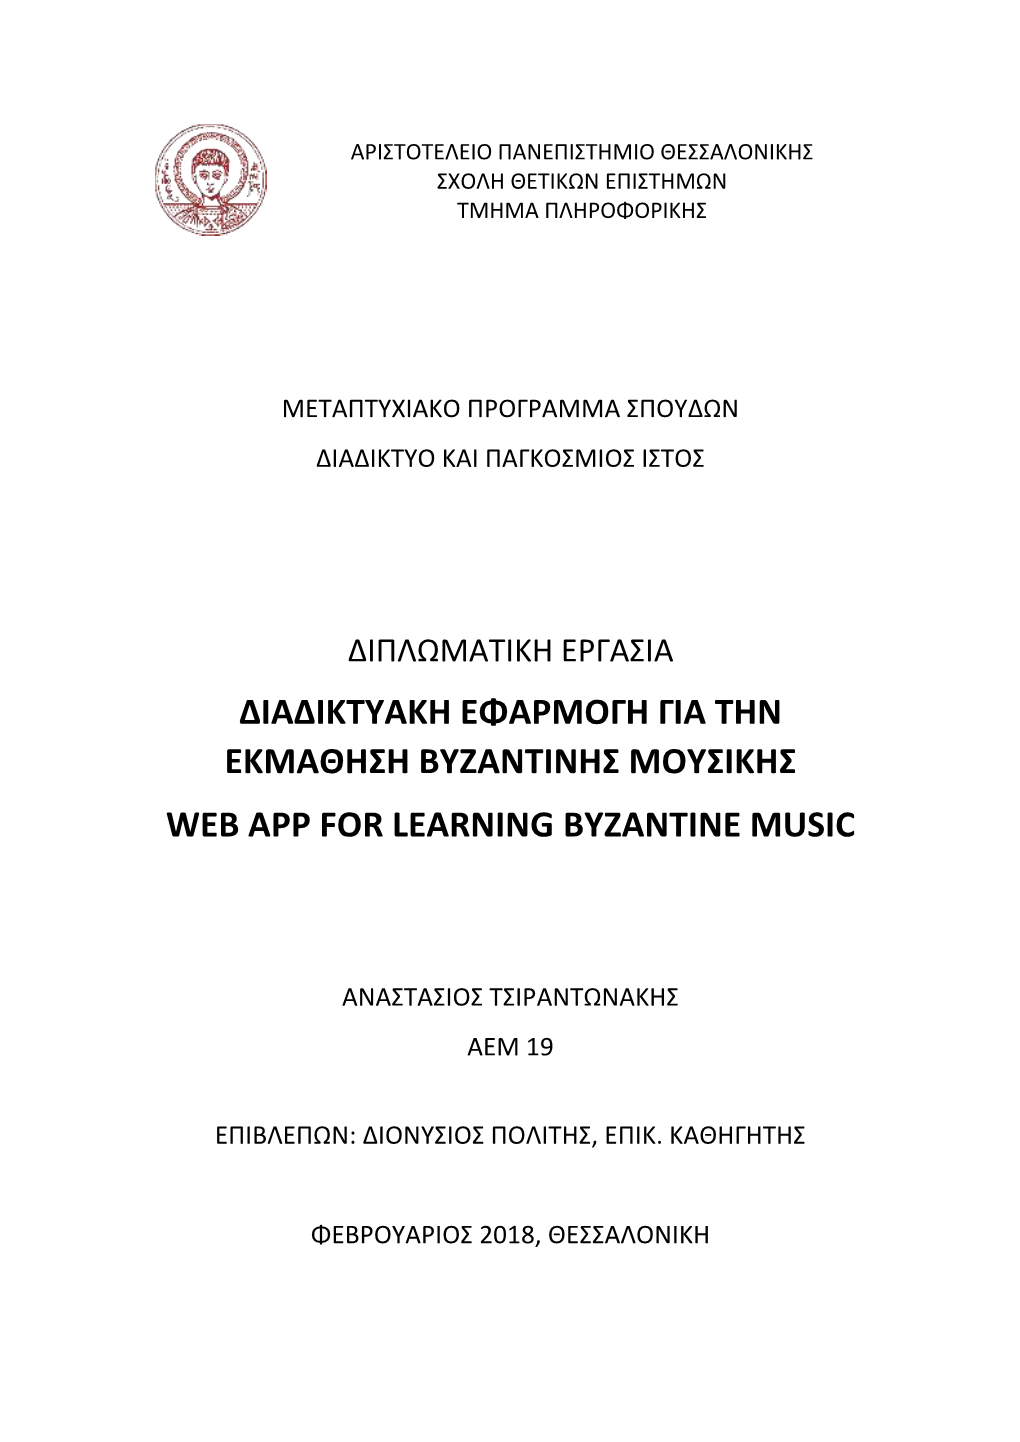 Διαδικτυακη Εφαρμογη Για Την Εκμαθηση Βυζαντινησ Μουσικησ Web App for Learning Byzantine Music